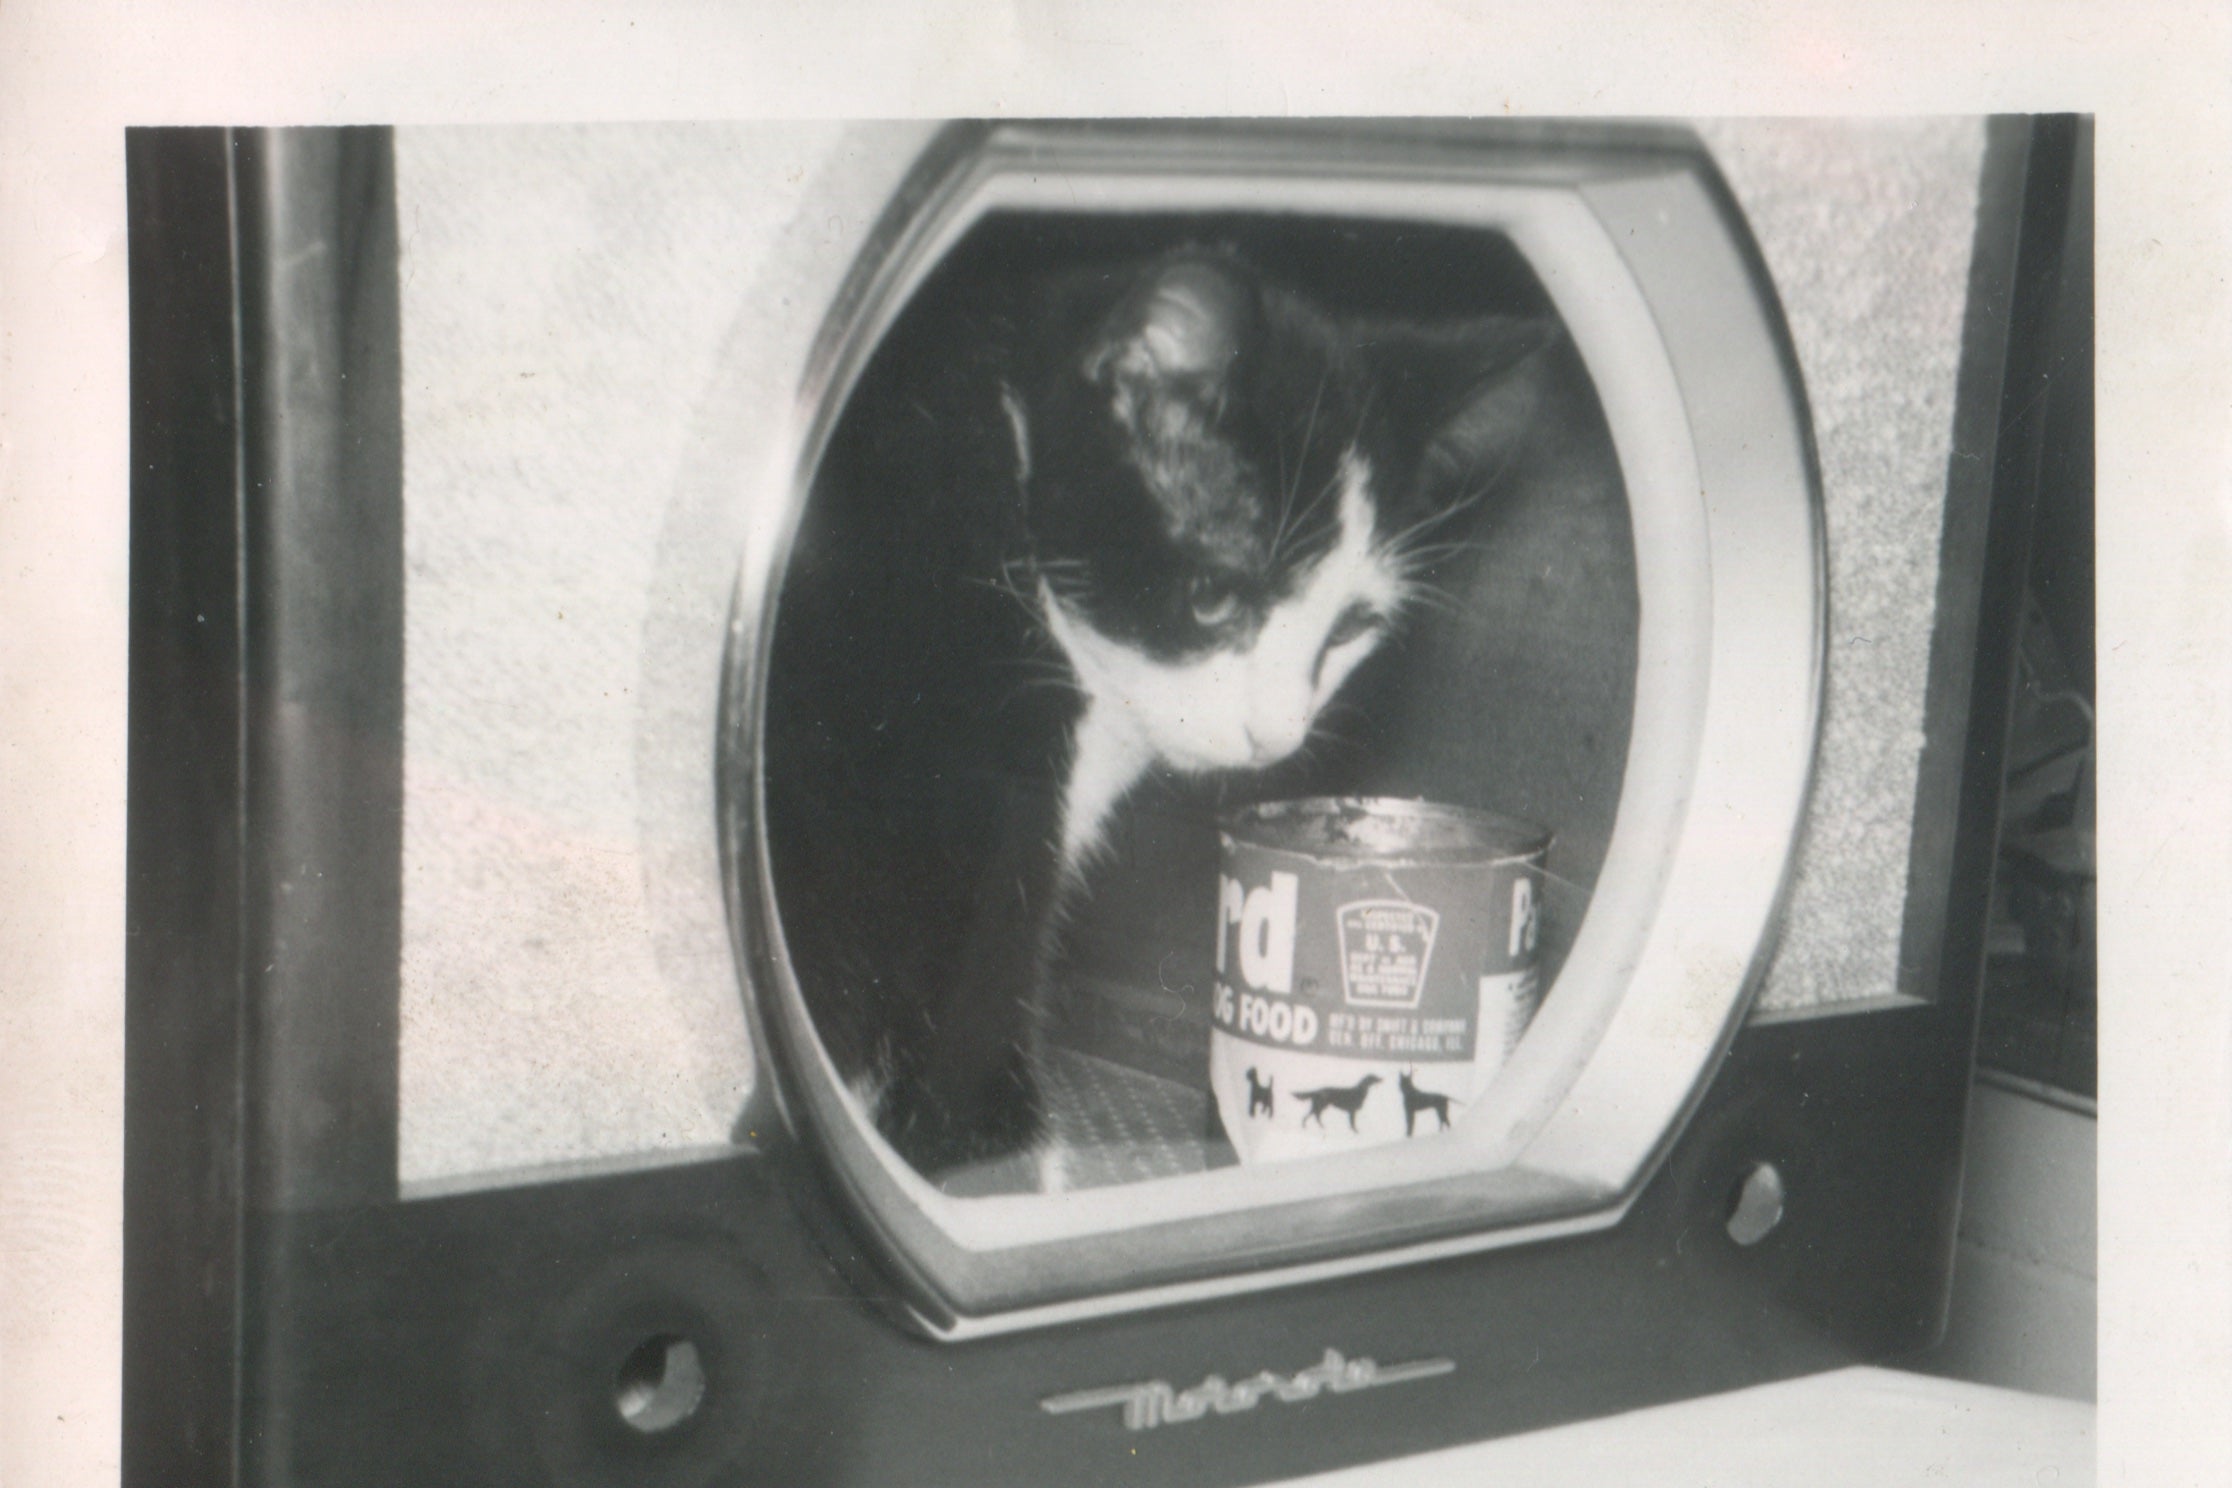 A cat inside a TV set. 